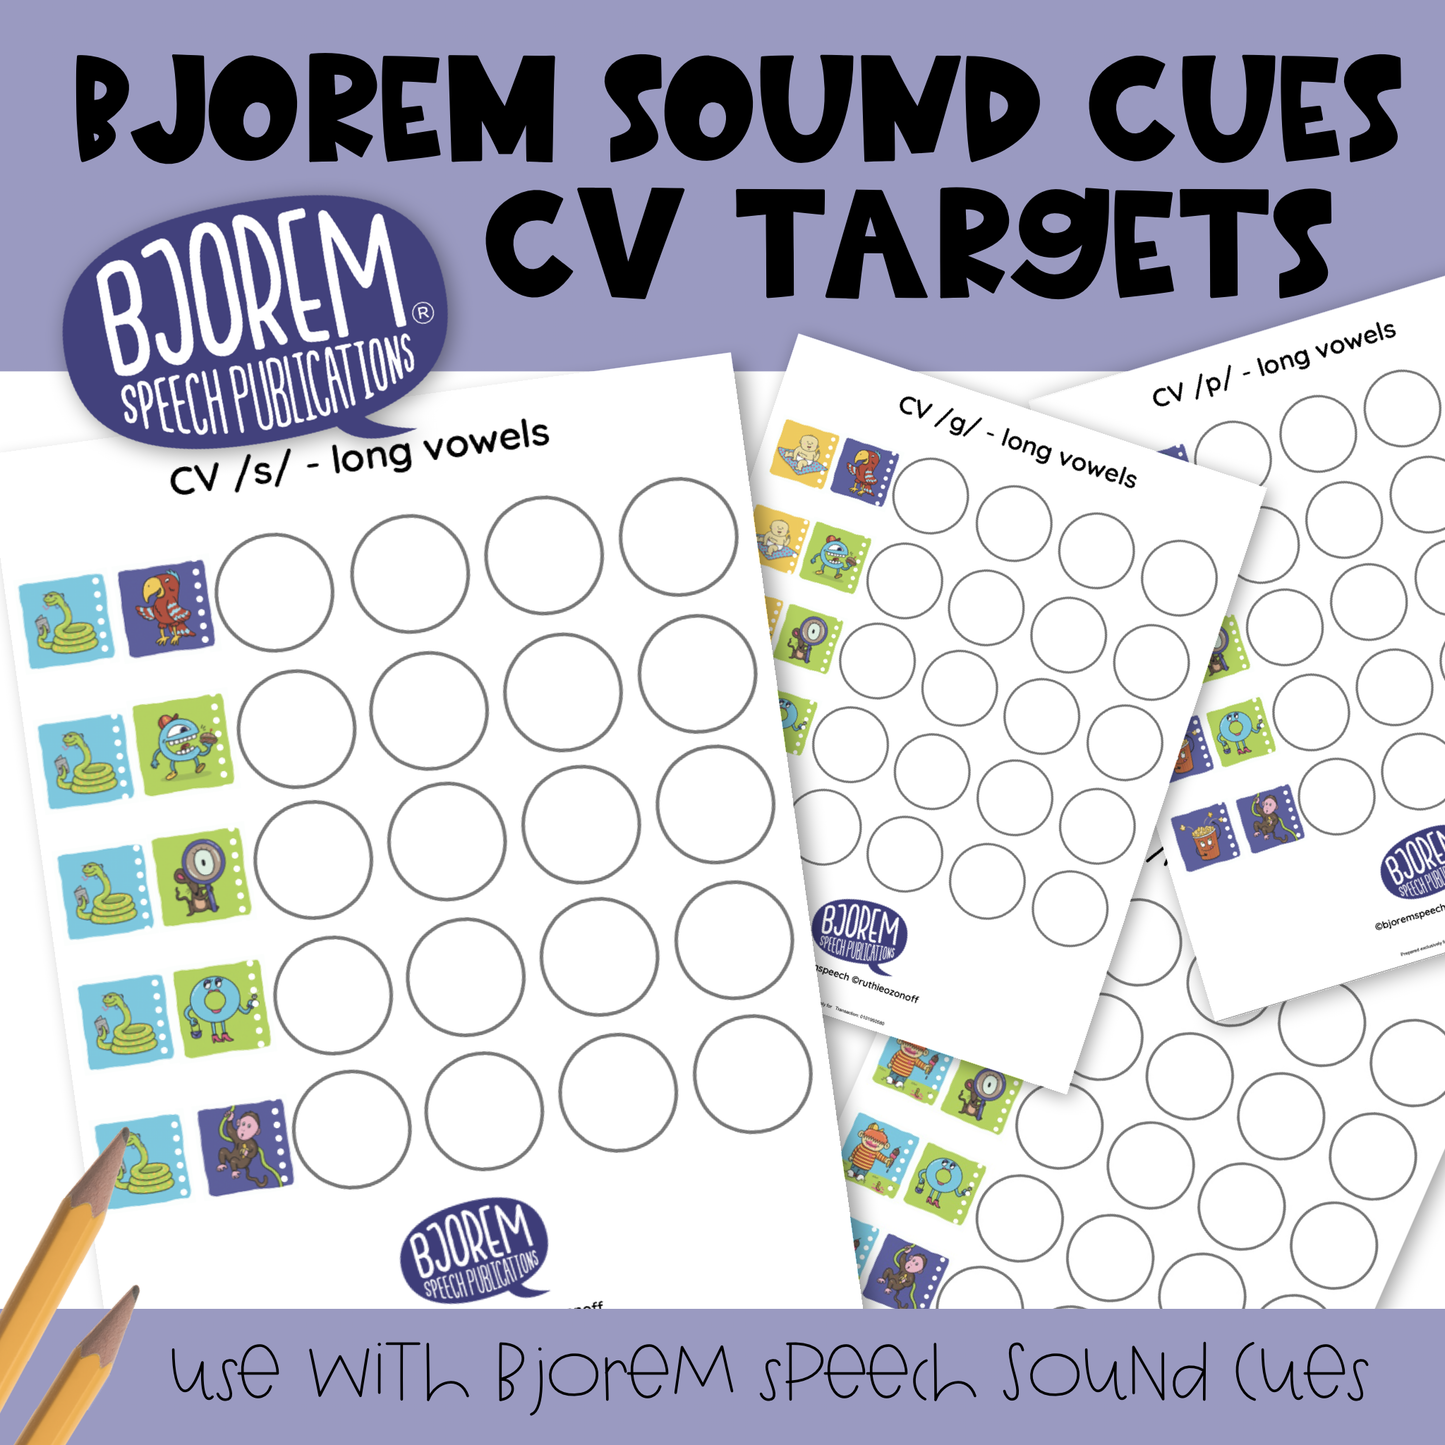 Bjorem Sound Cues - CV Target Sheets Download